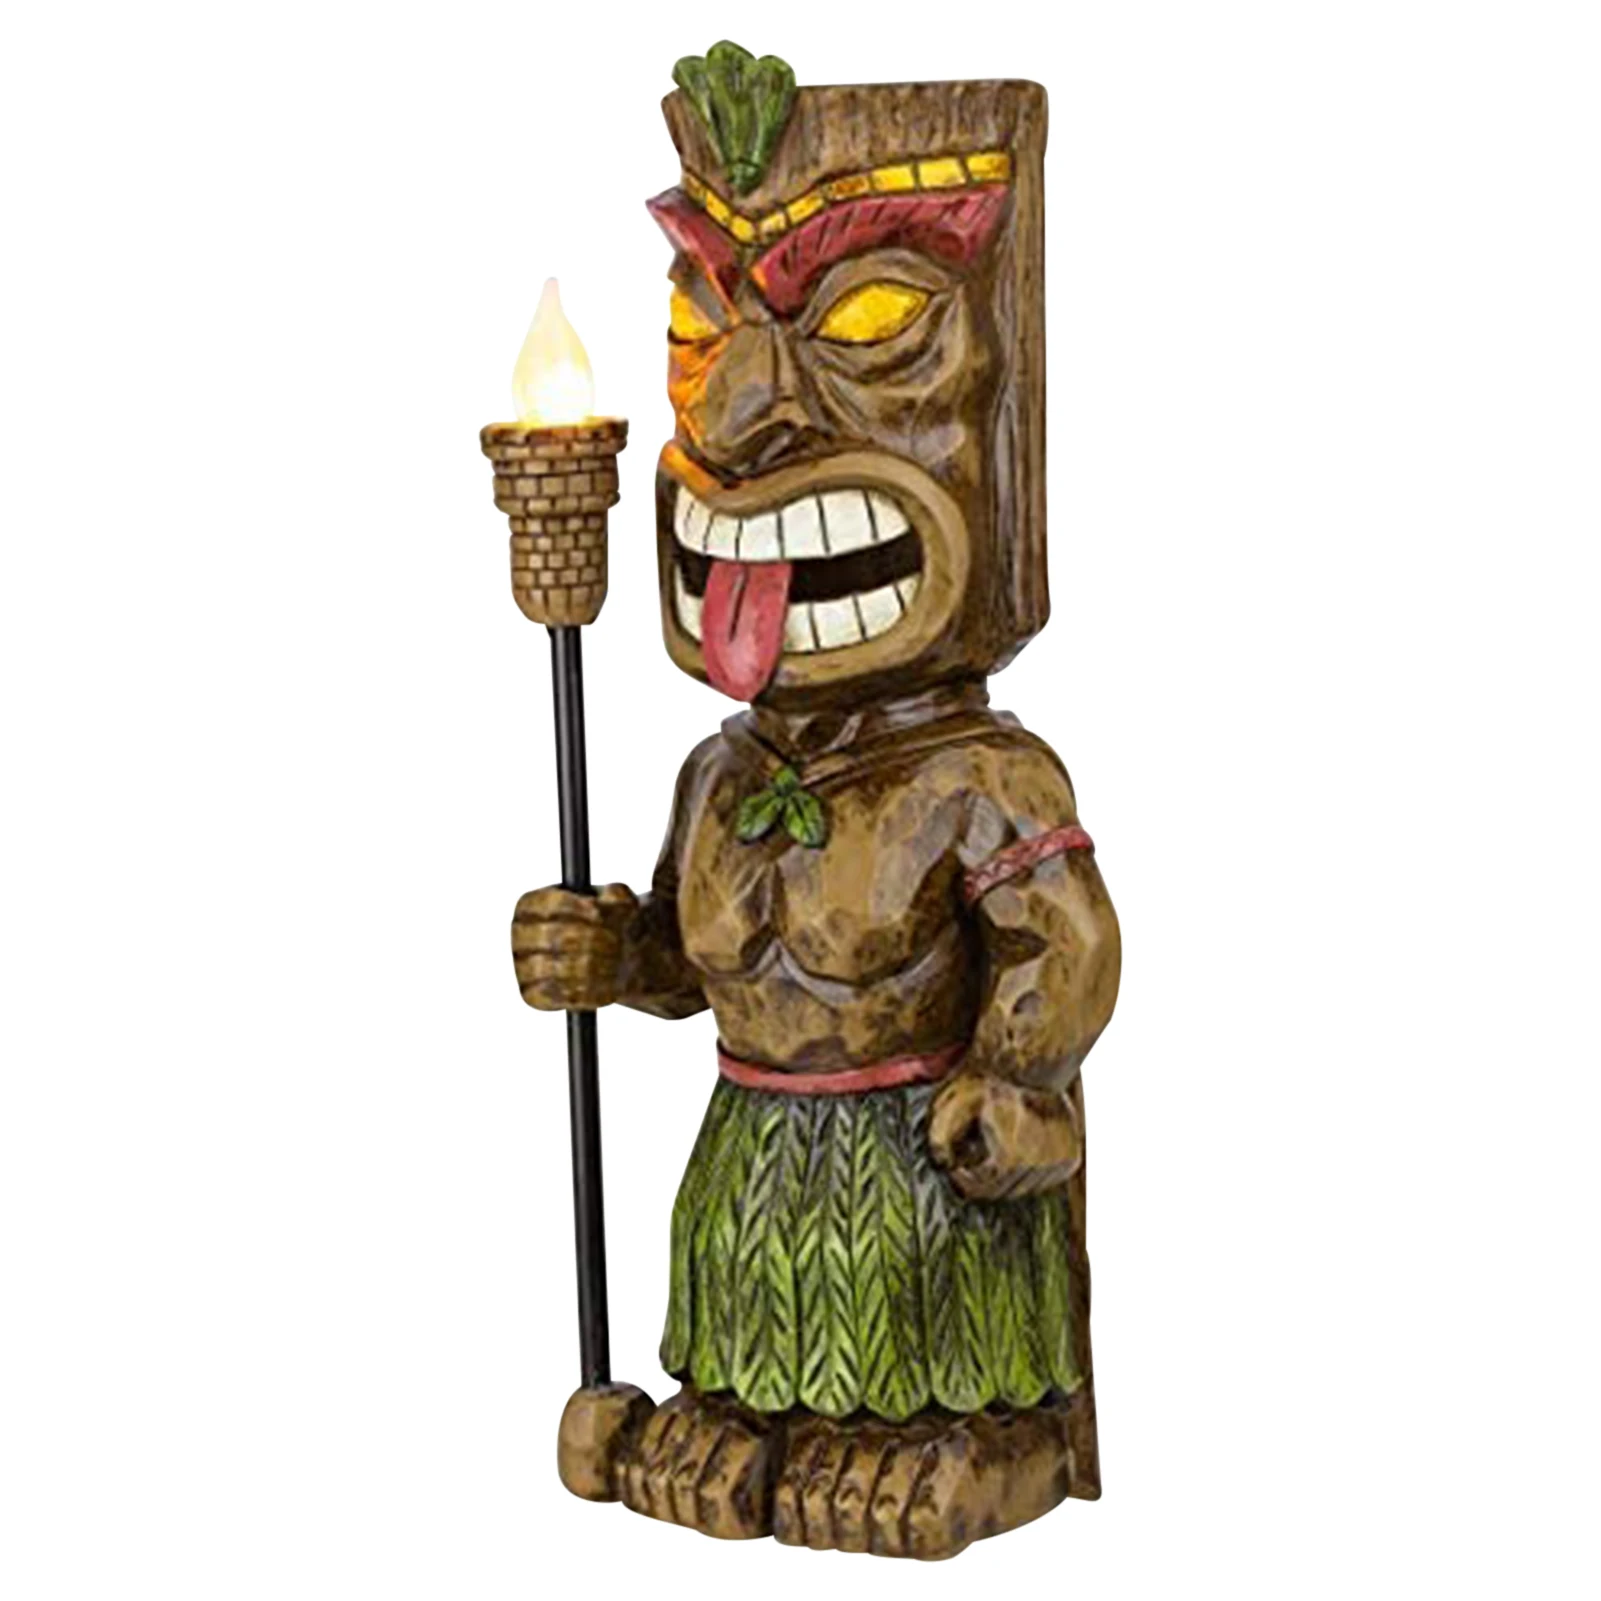 

Статуя из смолы, Расписанная вручную, старинный Тотем майя, скульптура фонарь ком, наружная садовая статуэтка, художественное украшение дво...